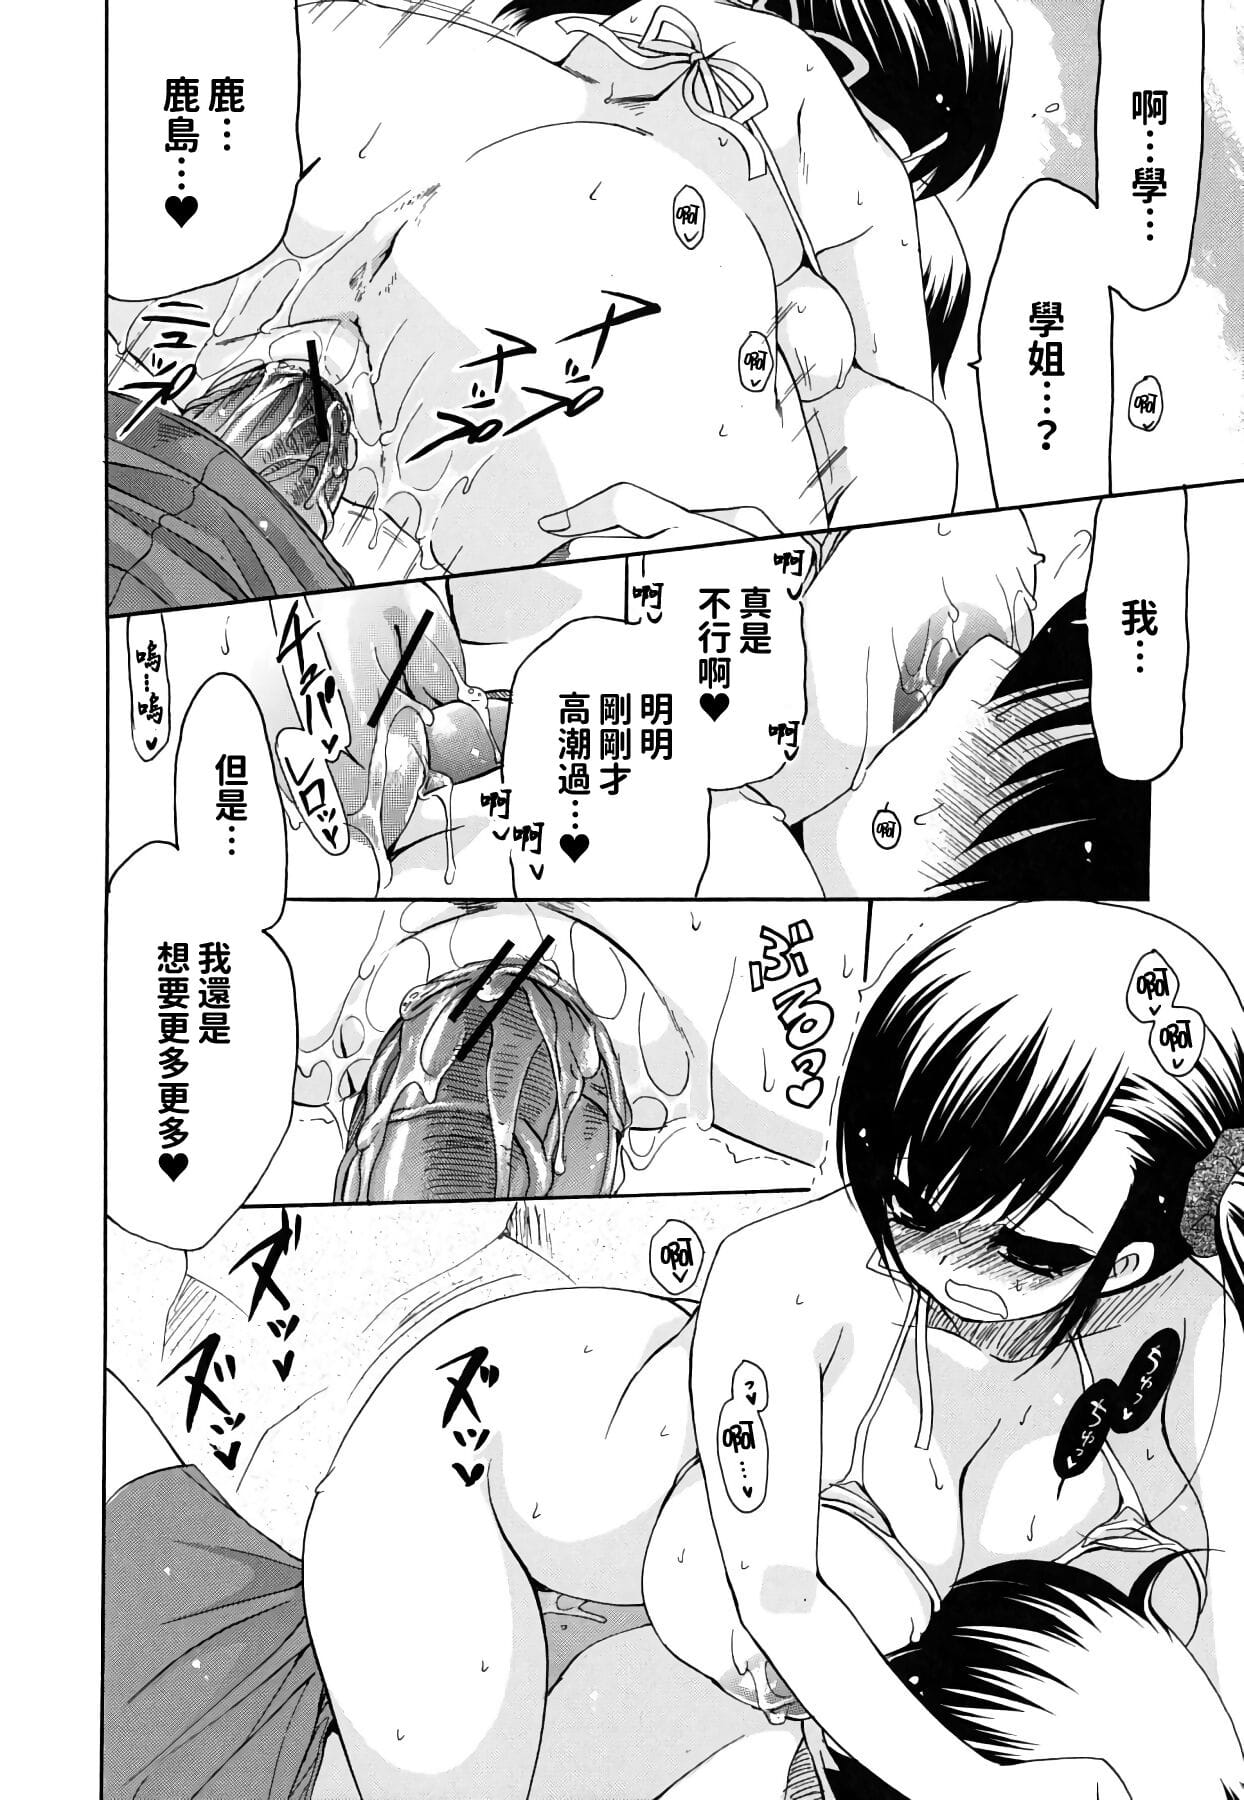 Kanojo no Chichi wa Boku no Mono - part 2 page 1